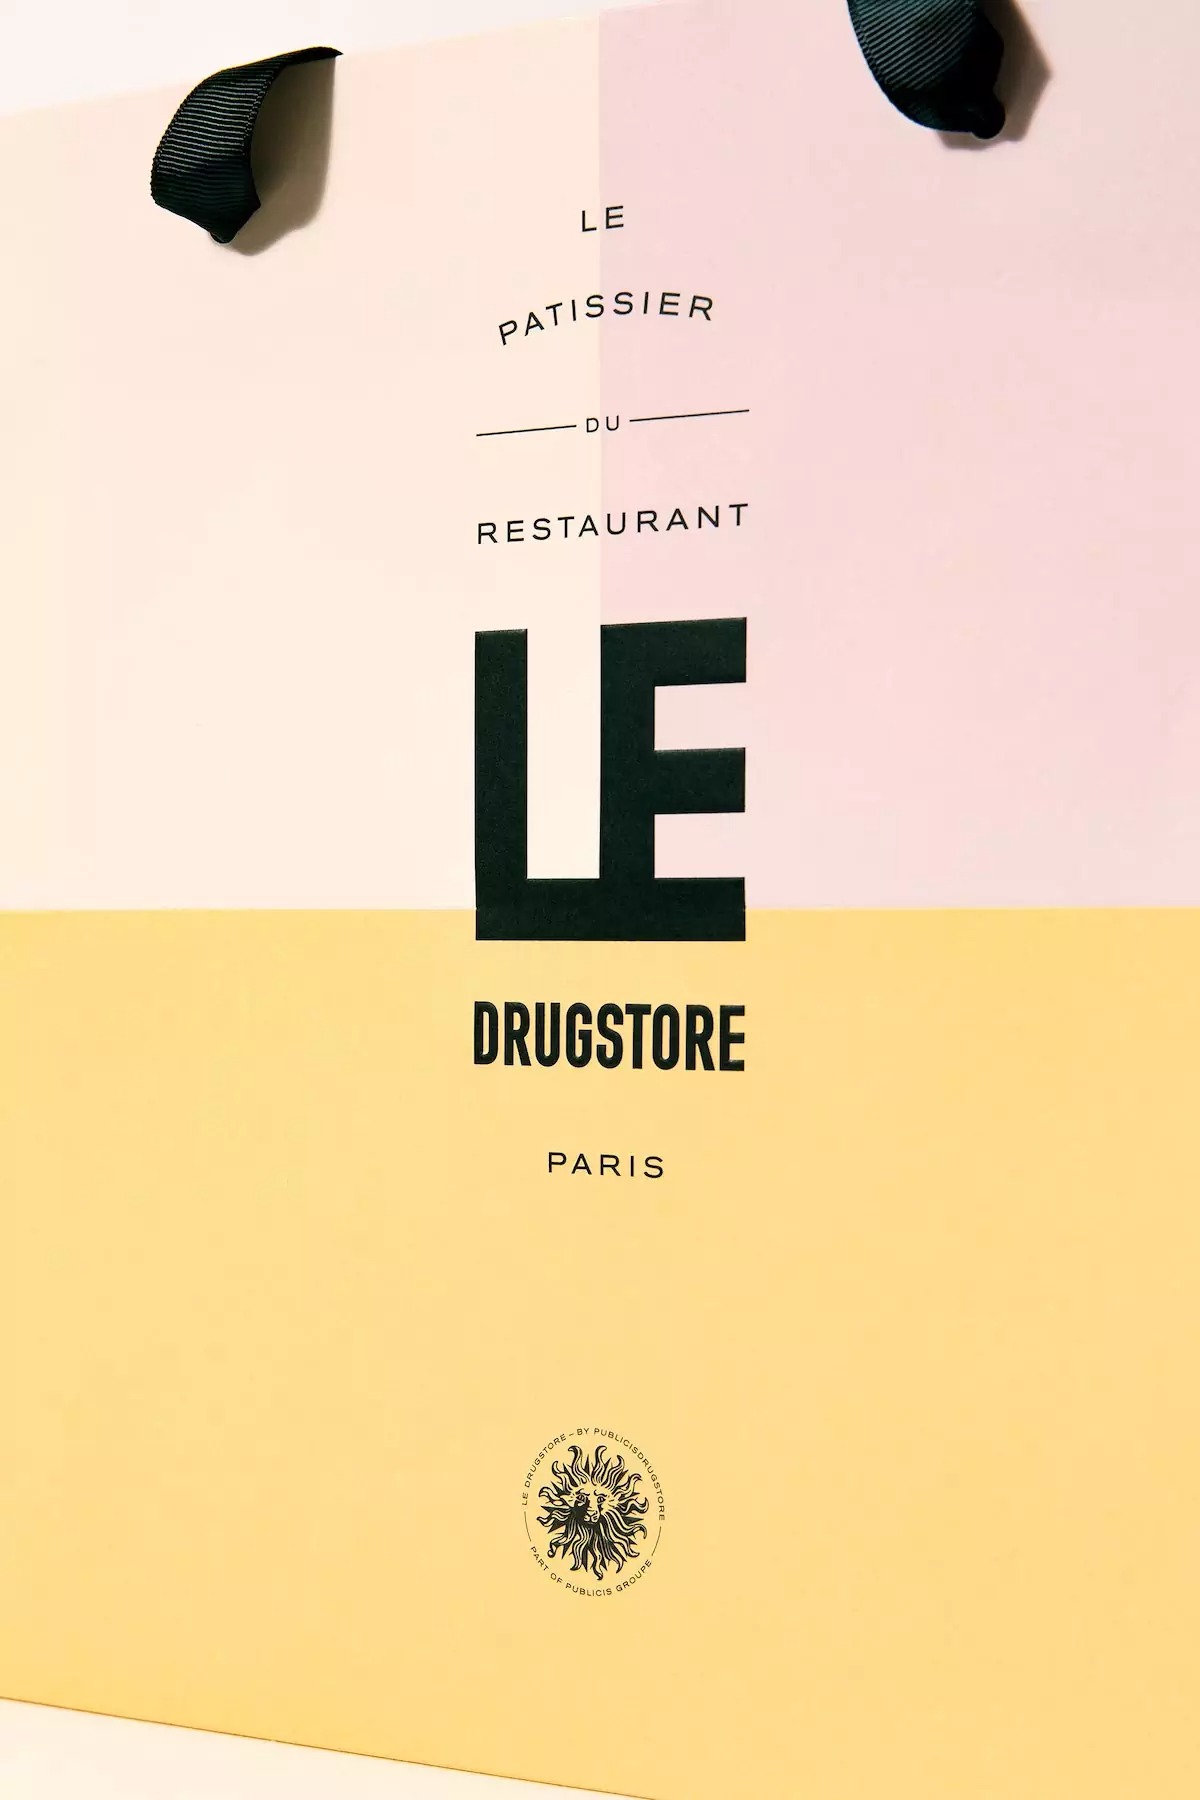 Le Patissier法国糕点店品牌包装设计